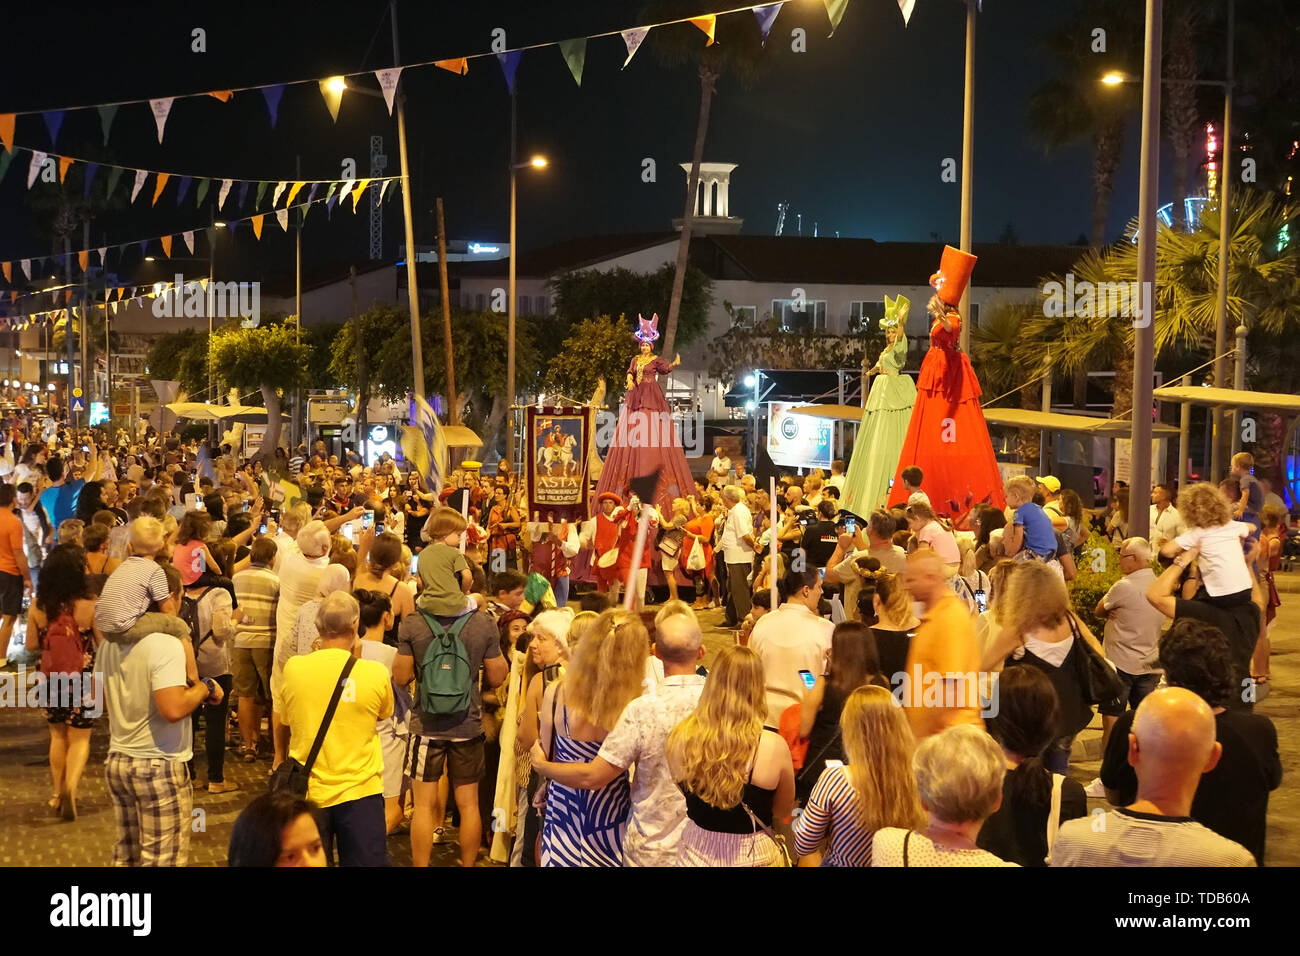 Jährliches Festival der mittelalterlichen Kulturen Europas. Die Prozession der Spalte in der Karneval historische Kostüme der Stadt bei Nacht. Zypern, Ayia Stockfoto